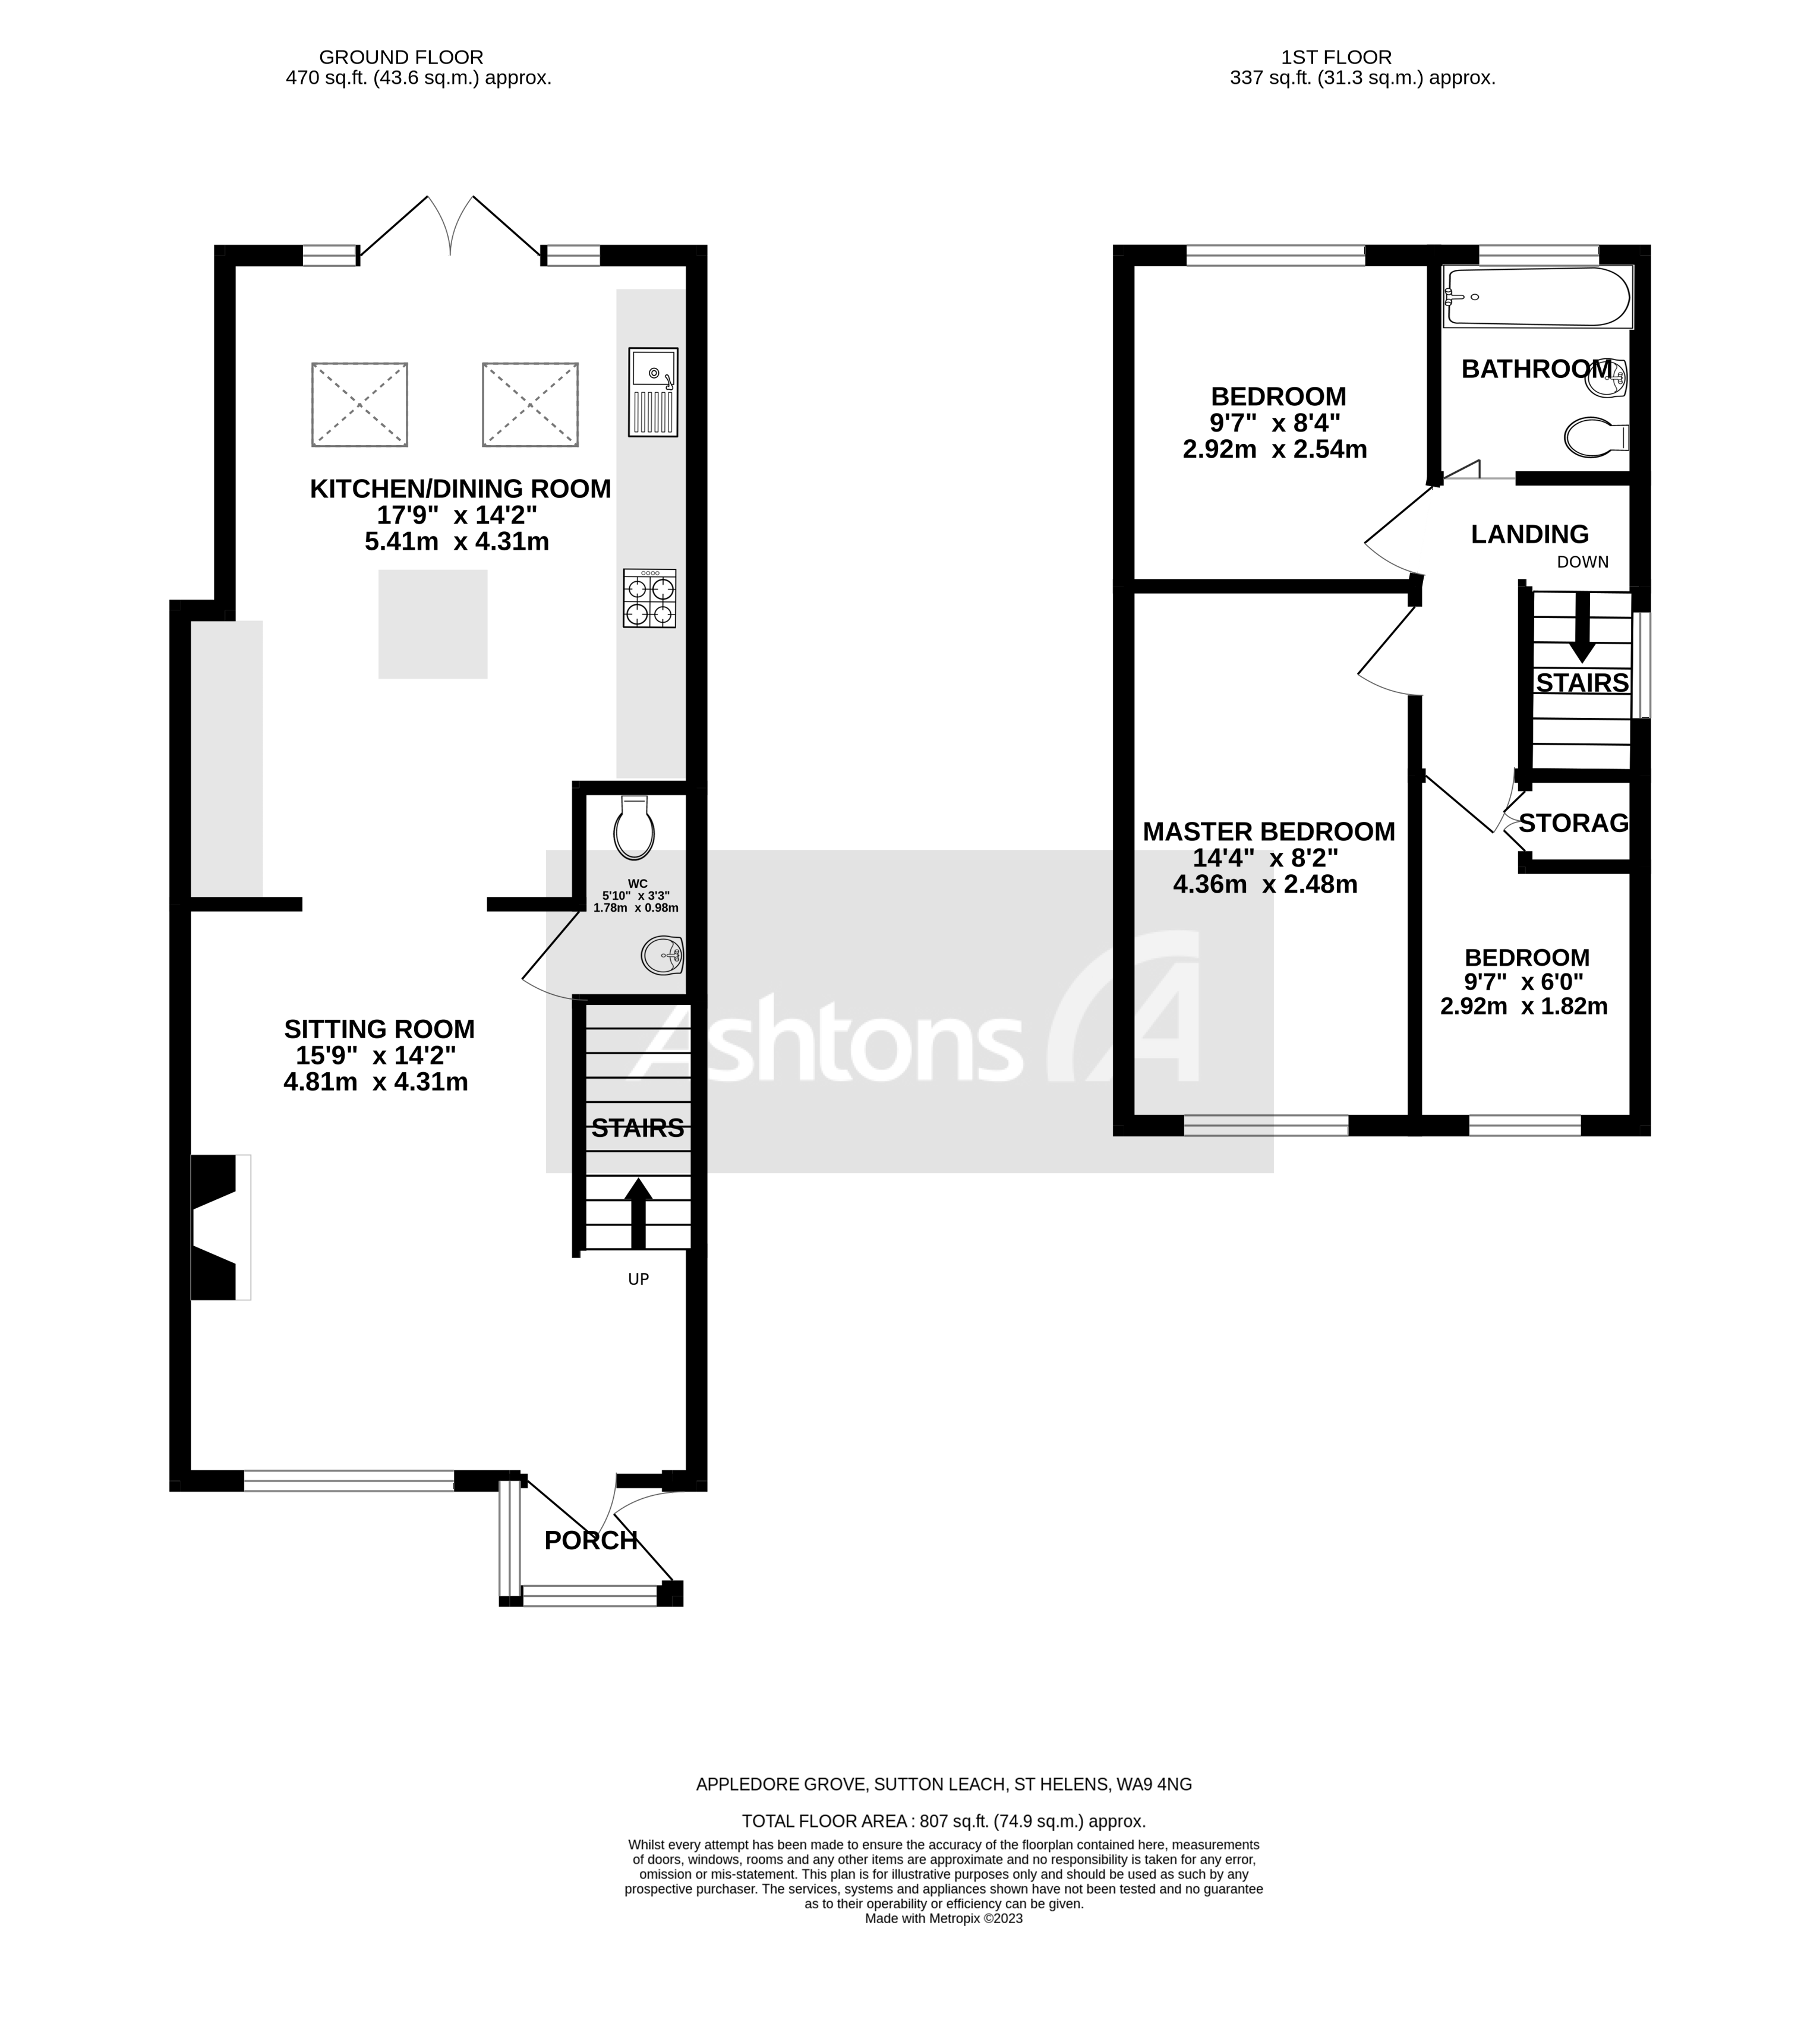 Appledore Grove, St. Helens Floor Plan